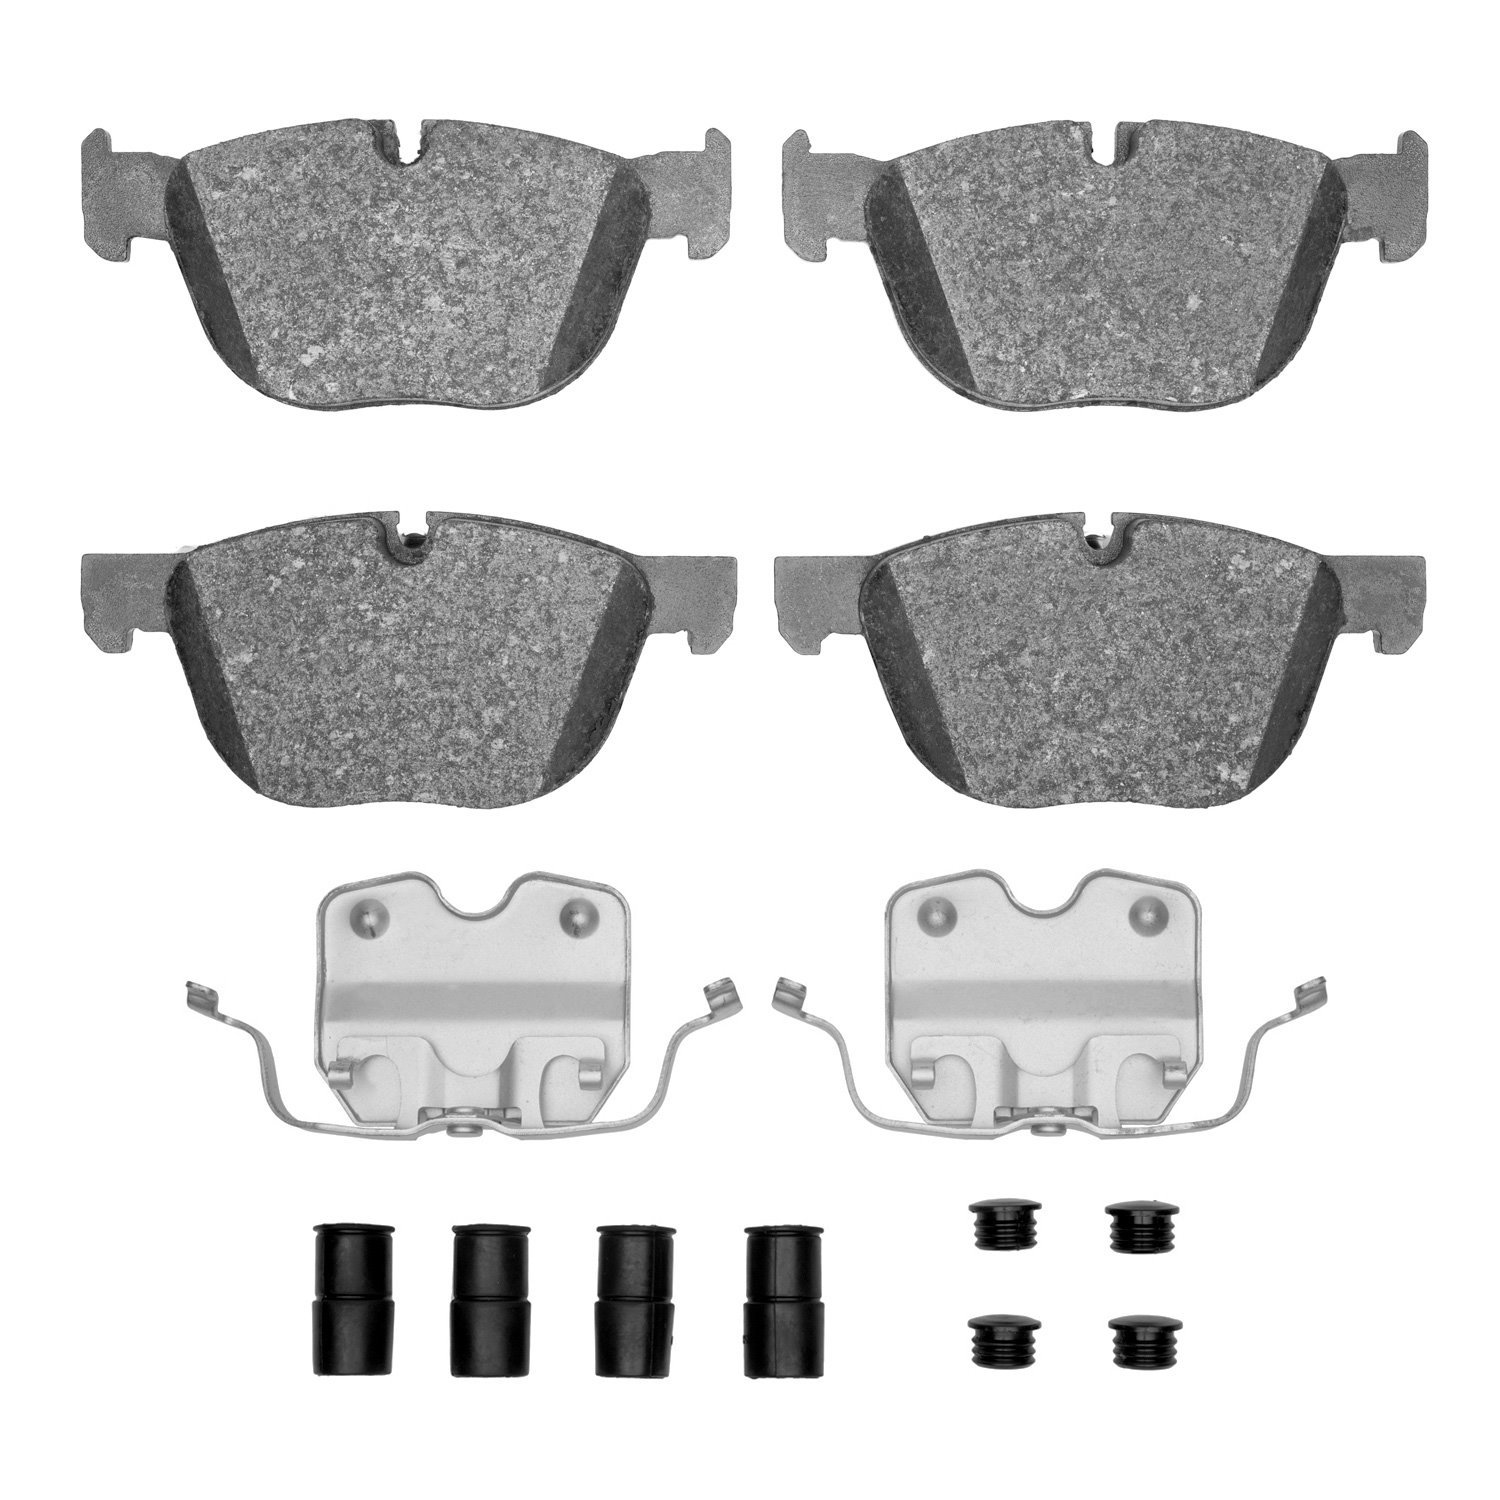 1310-1294-01 3000-Series Ceramic Brake Pads & Hardware Kit, 2007-2019 BMW, Position: Front